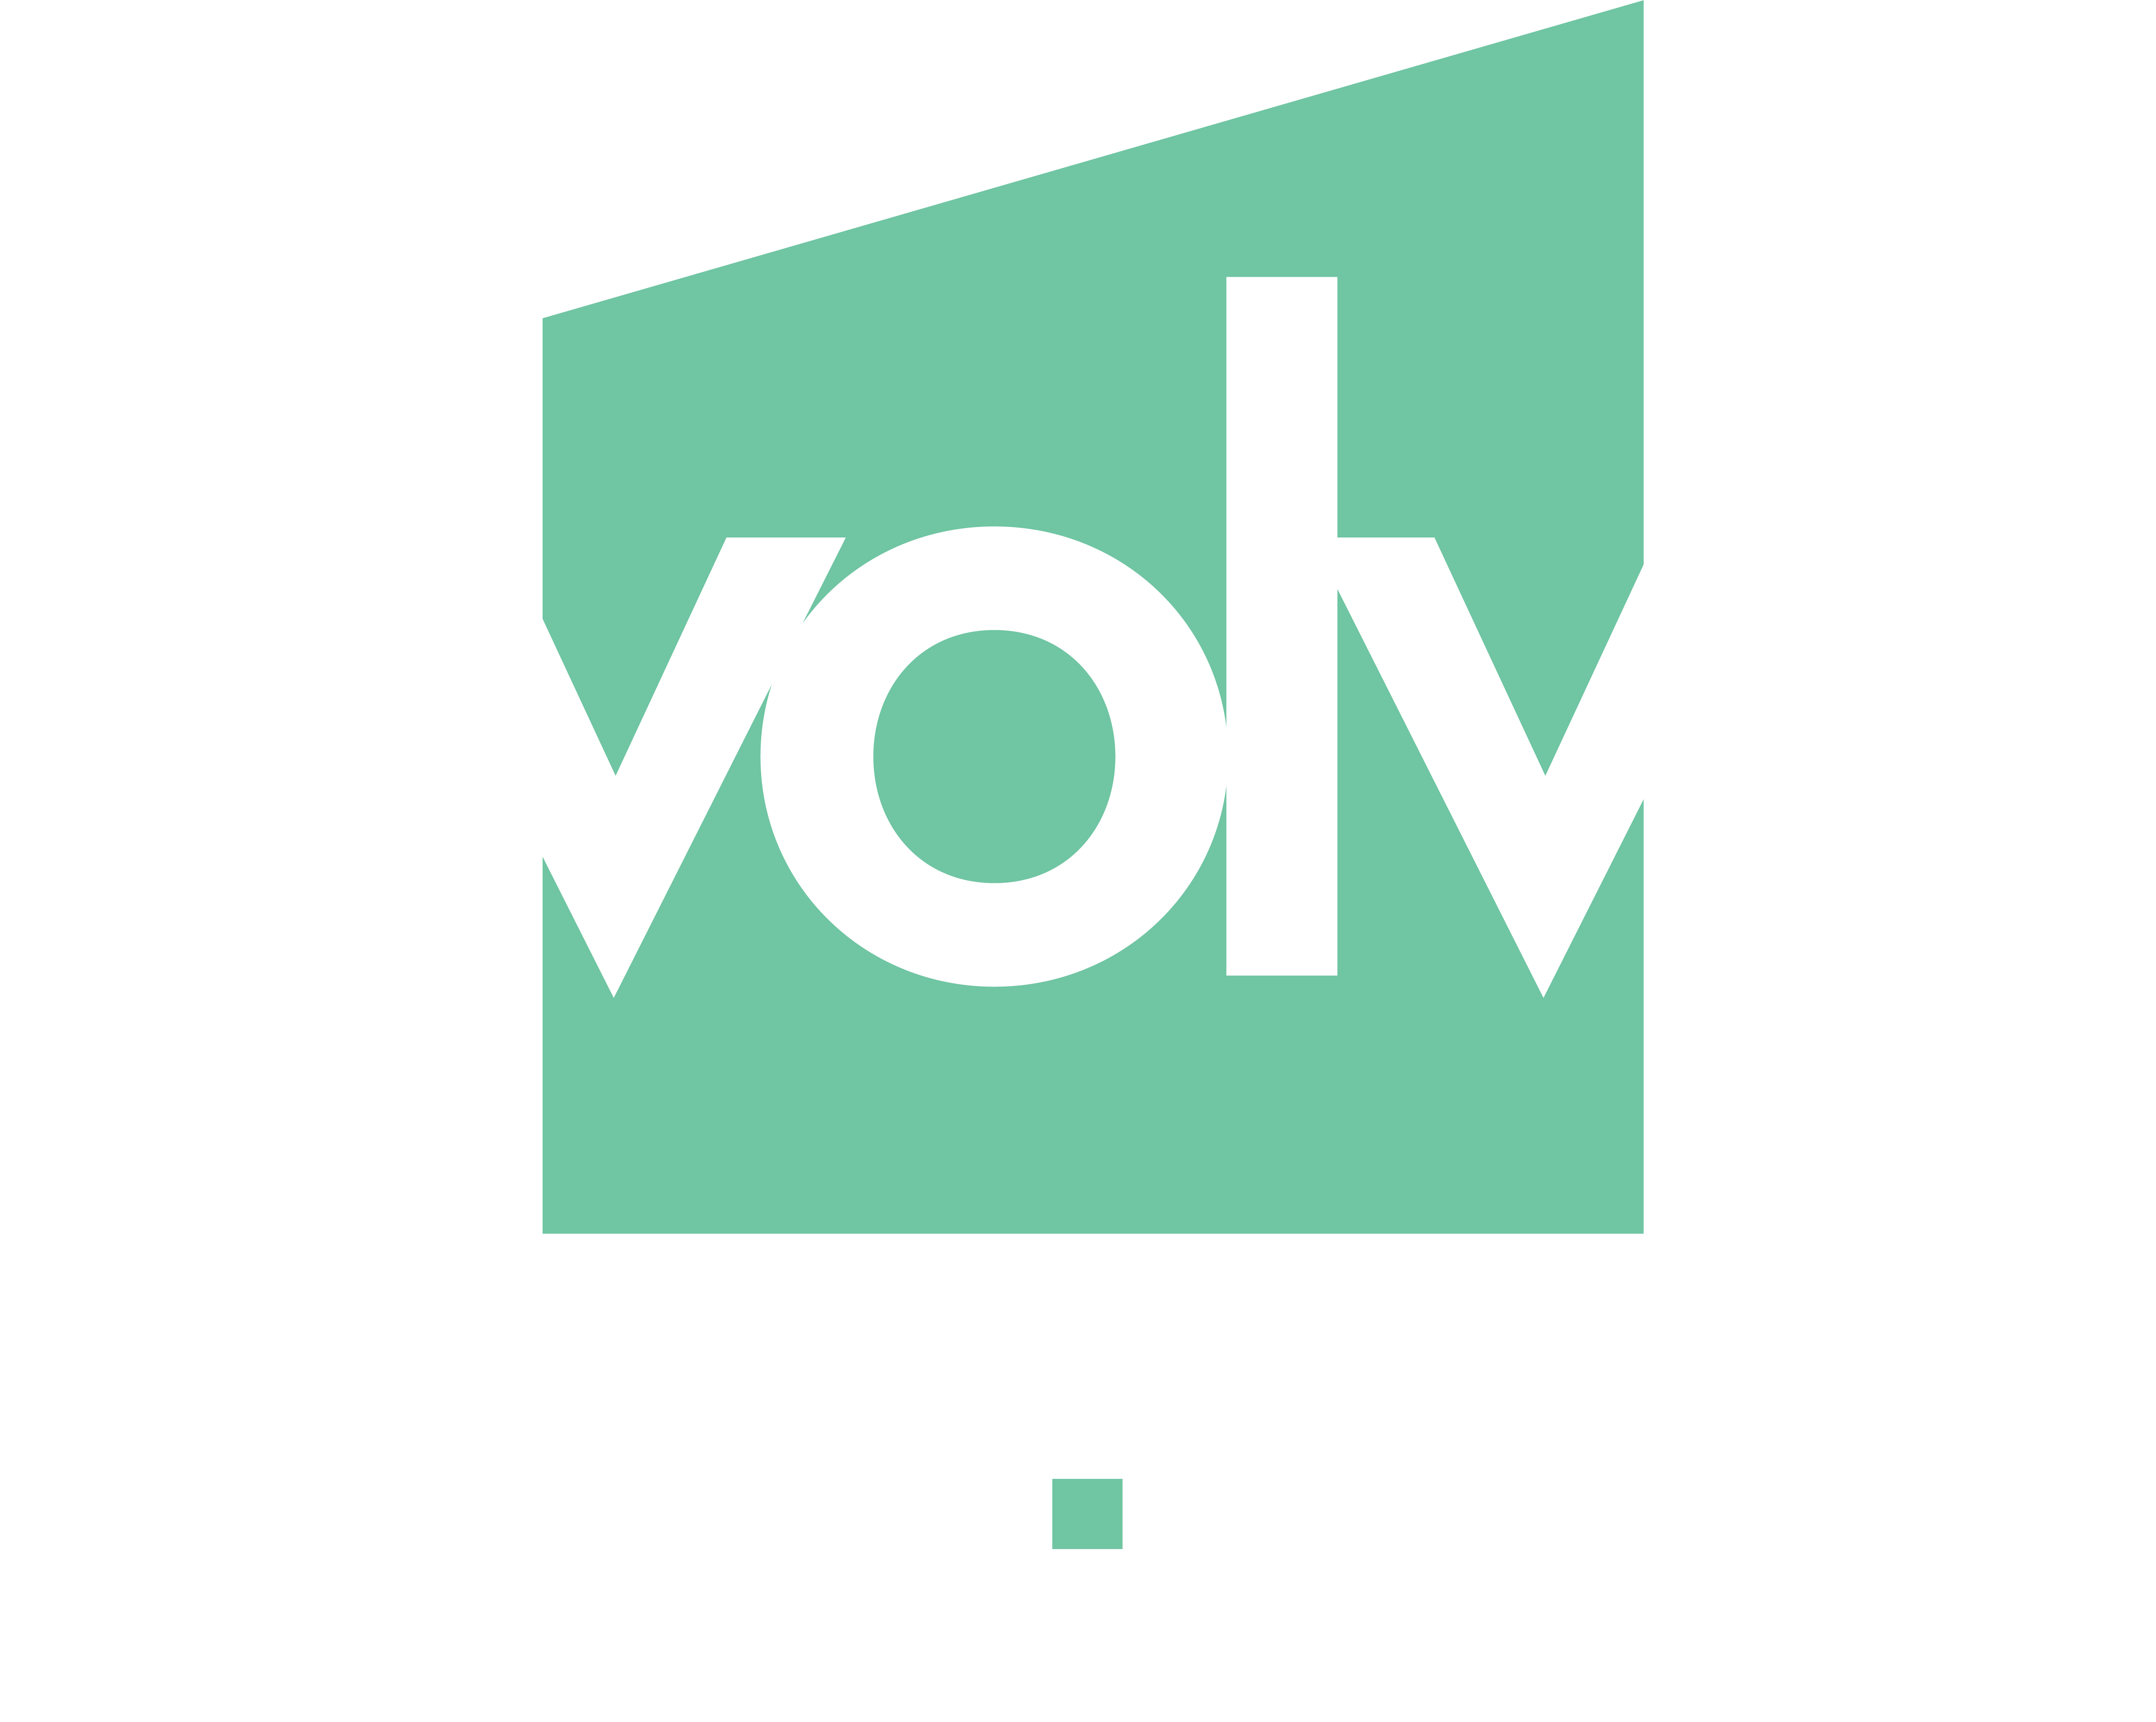 Evolve Insurance